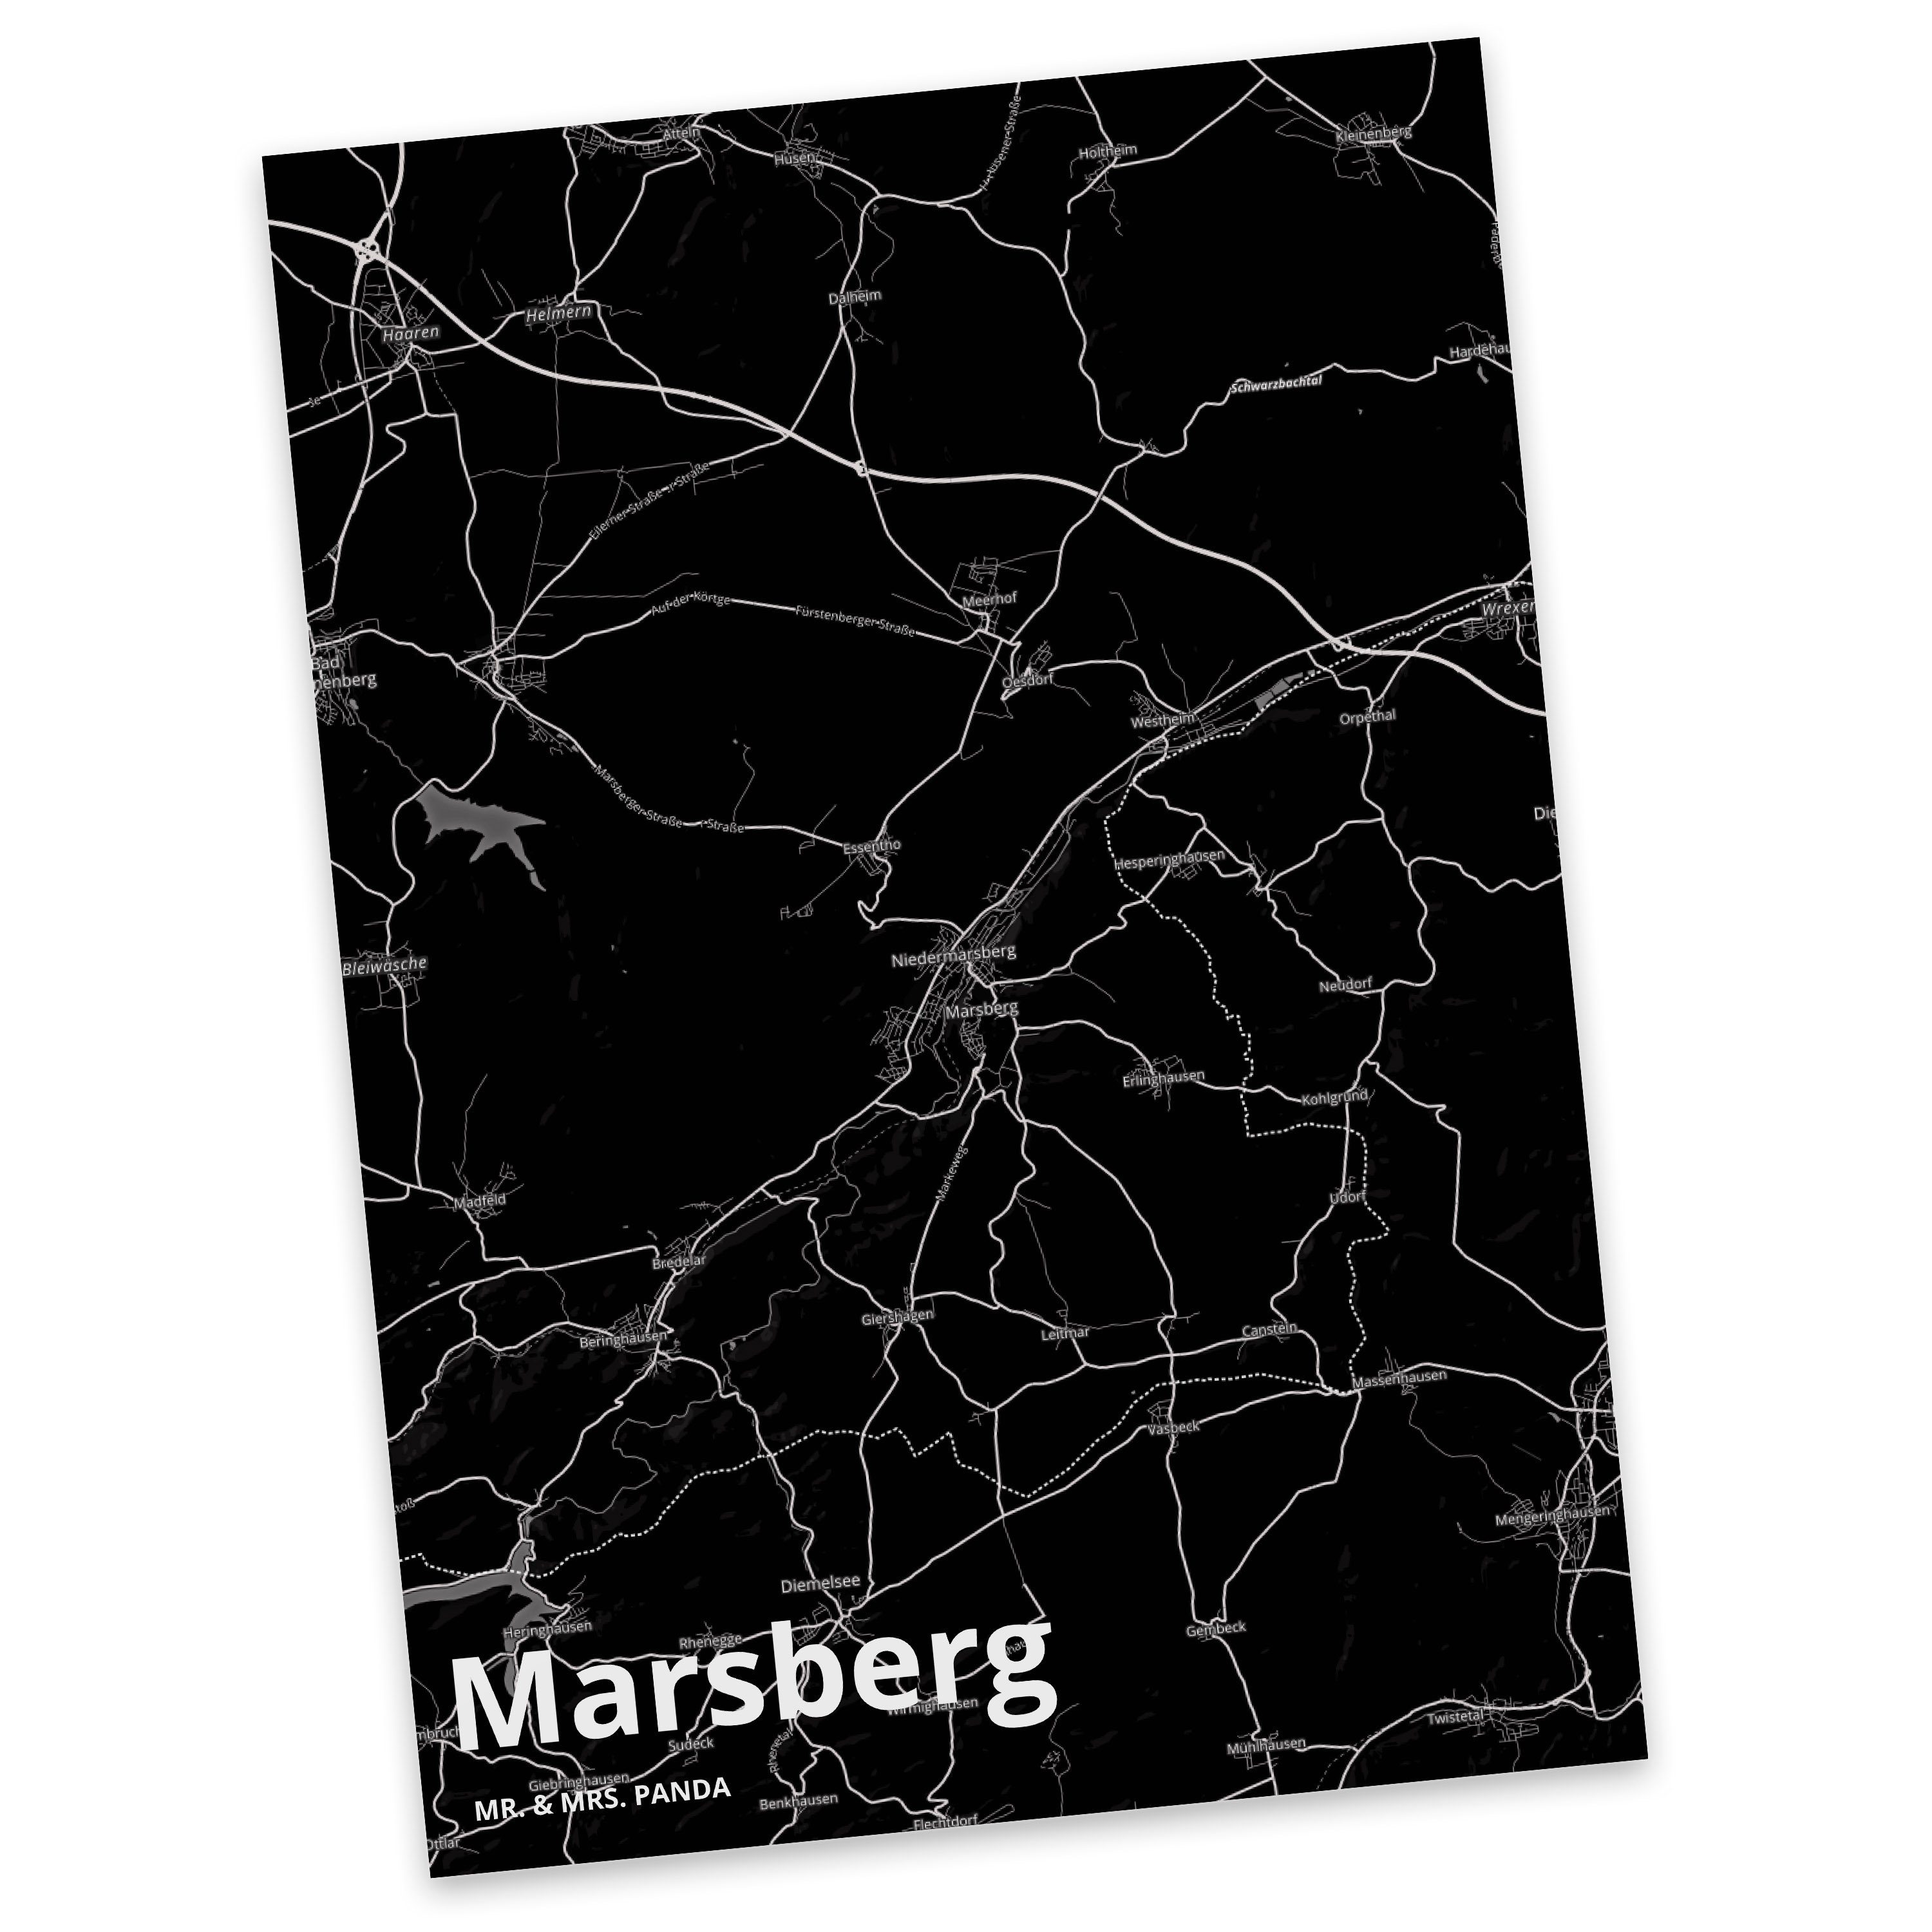 Mr. & Mrs. Panda Postkarte Marsberg - Geschenk, Ansichtskarte, Karte, Einladung, Dorf, Dankeskar